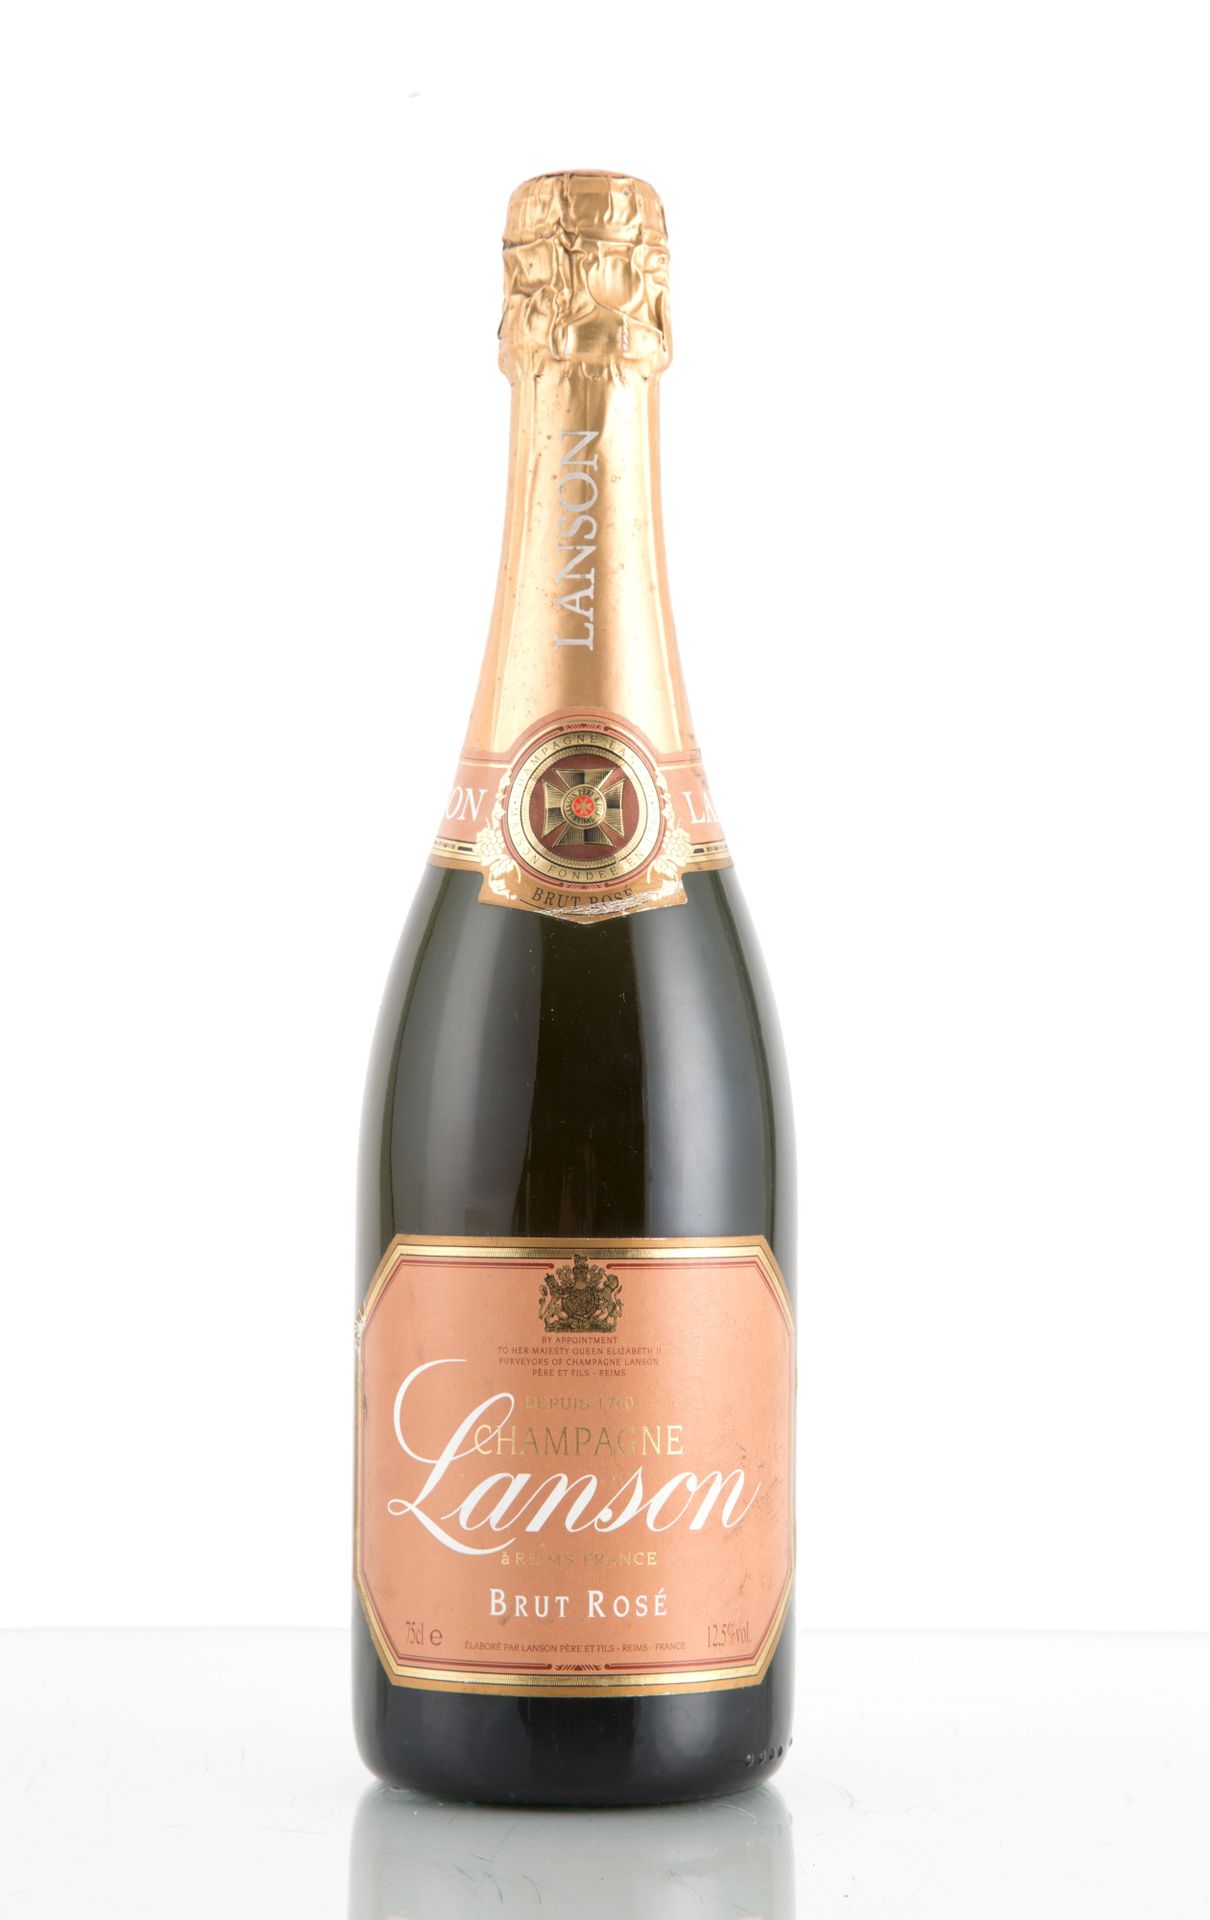 Champagne Lanson Brut Rosè (1 bt) Une bouteille de Champagne Lanson Brut Rosé.